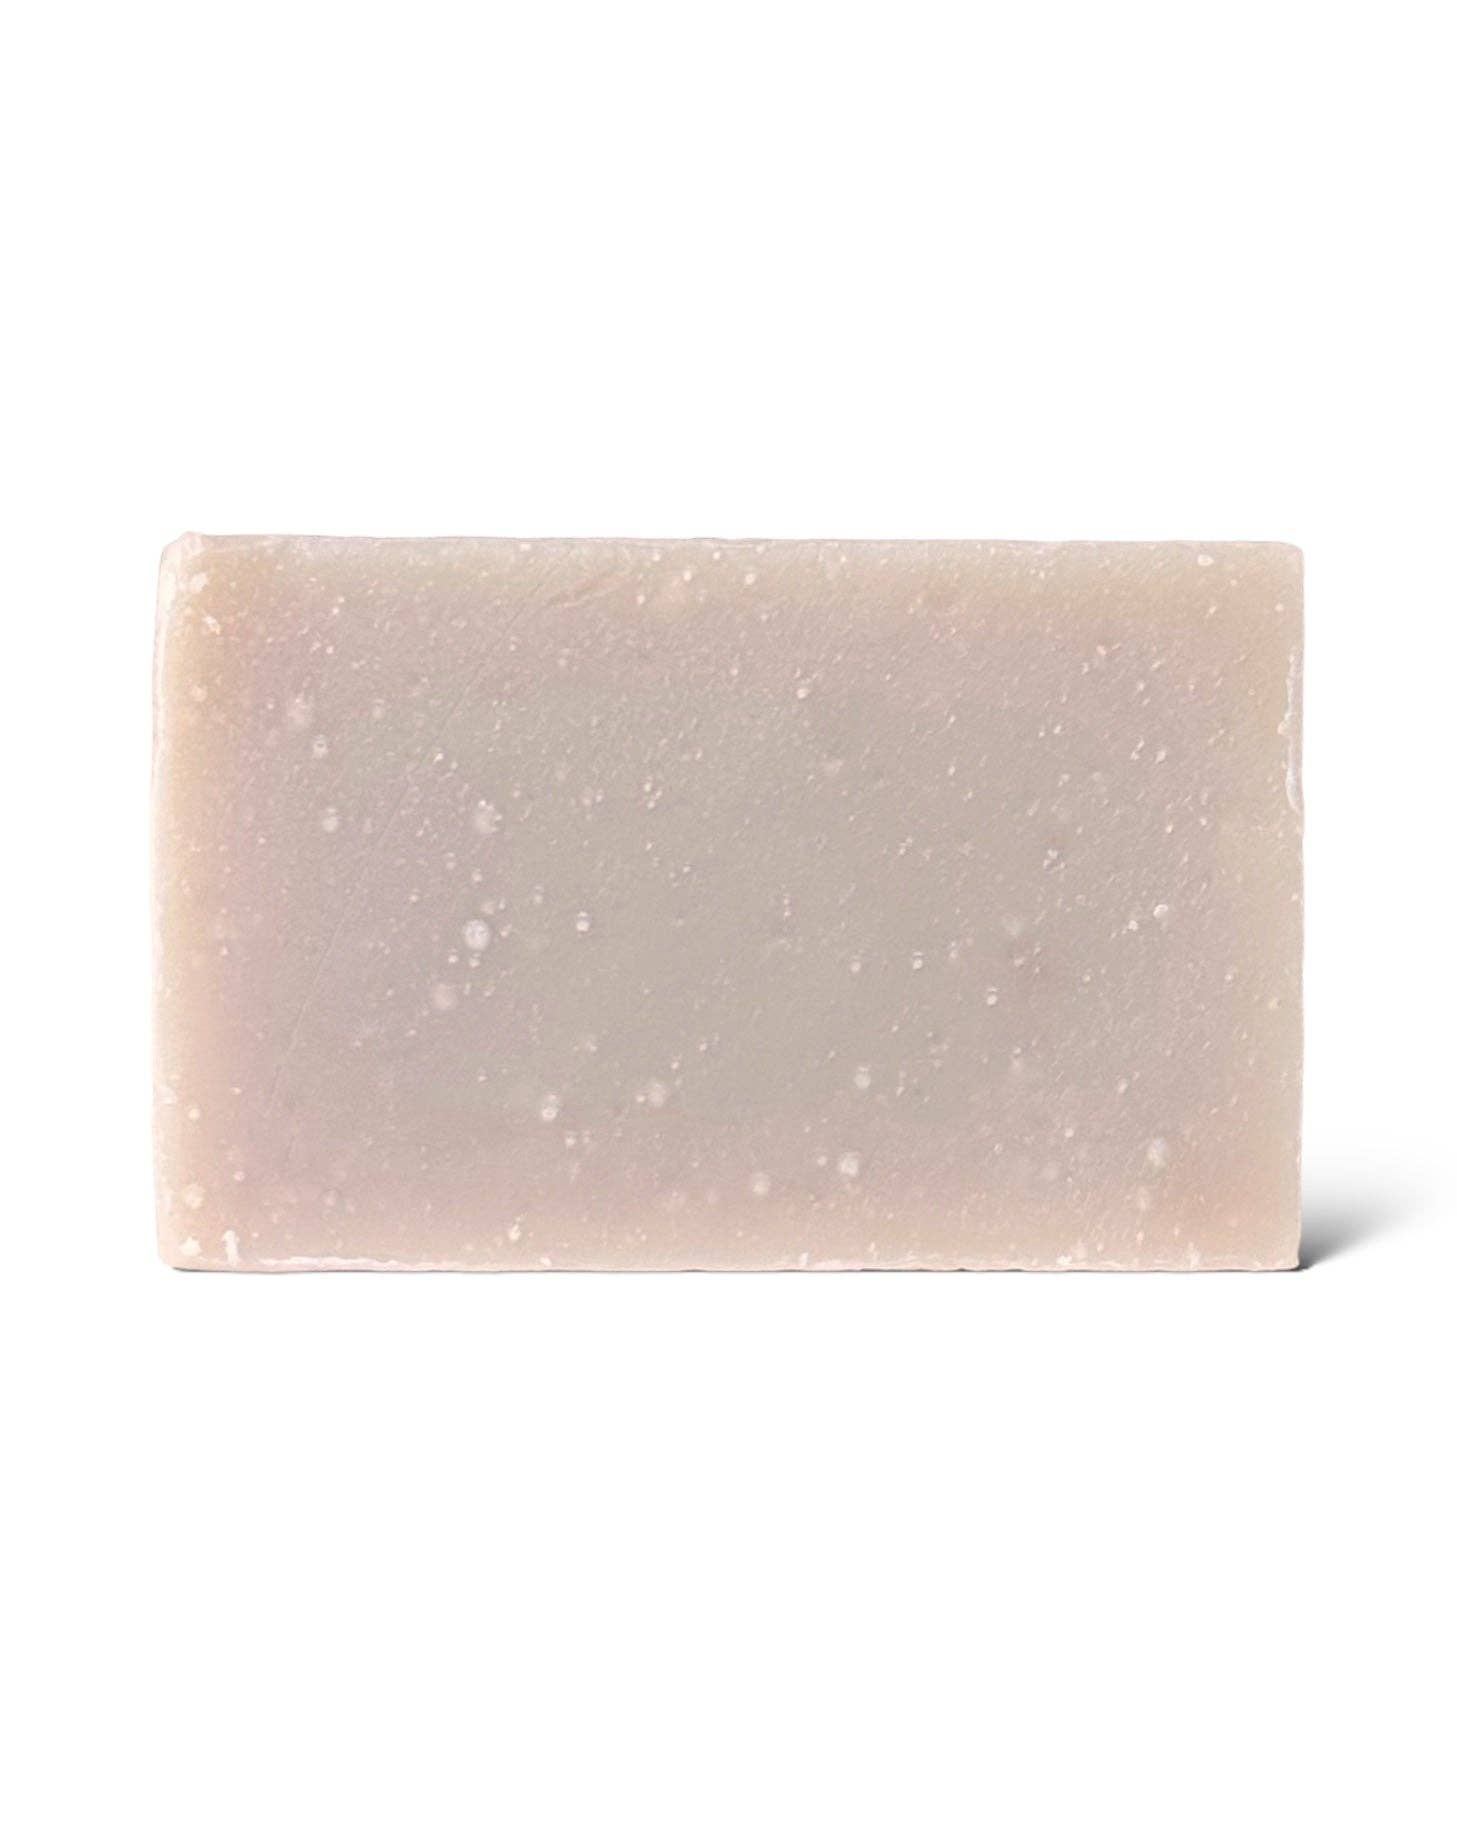 Ritual Bar Soap